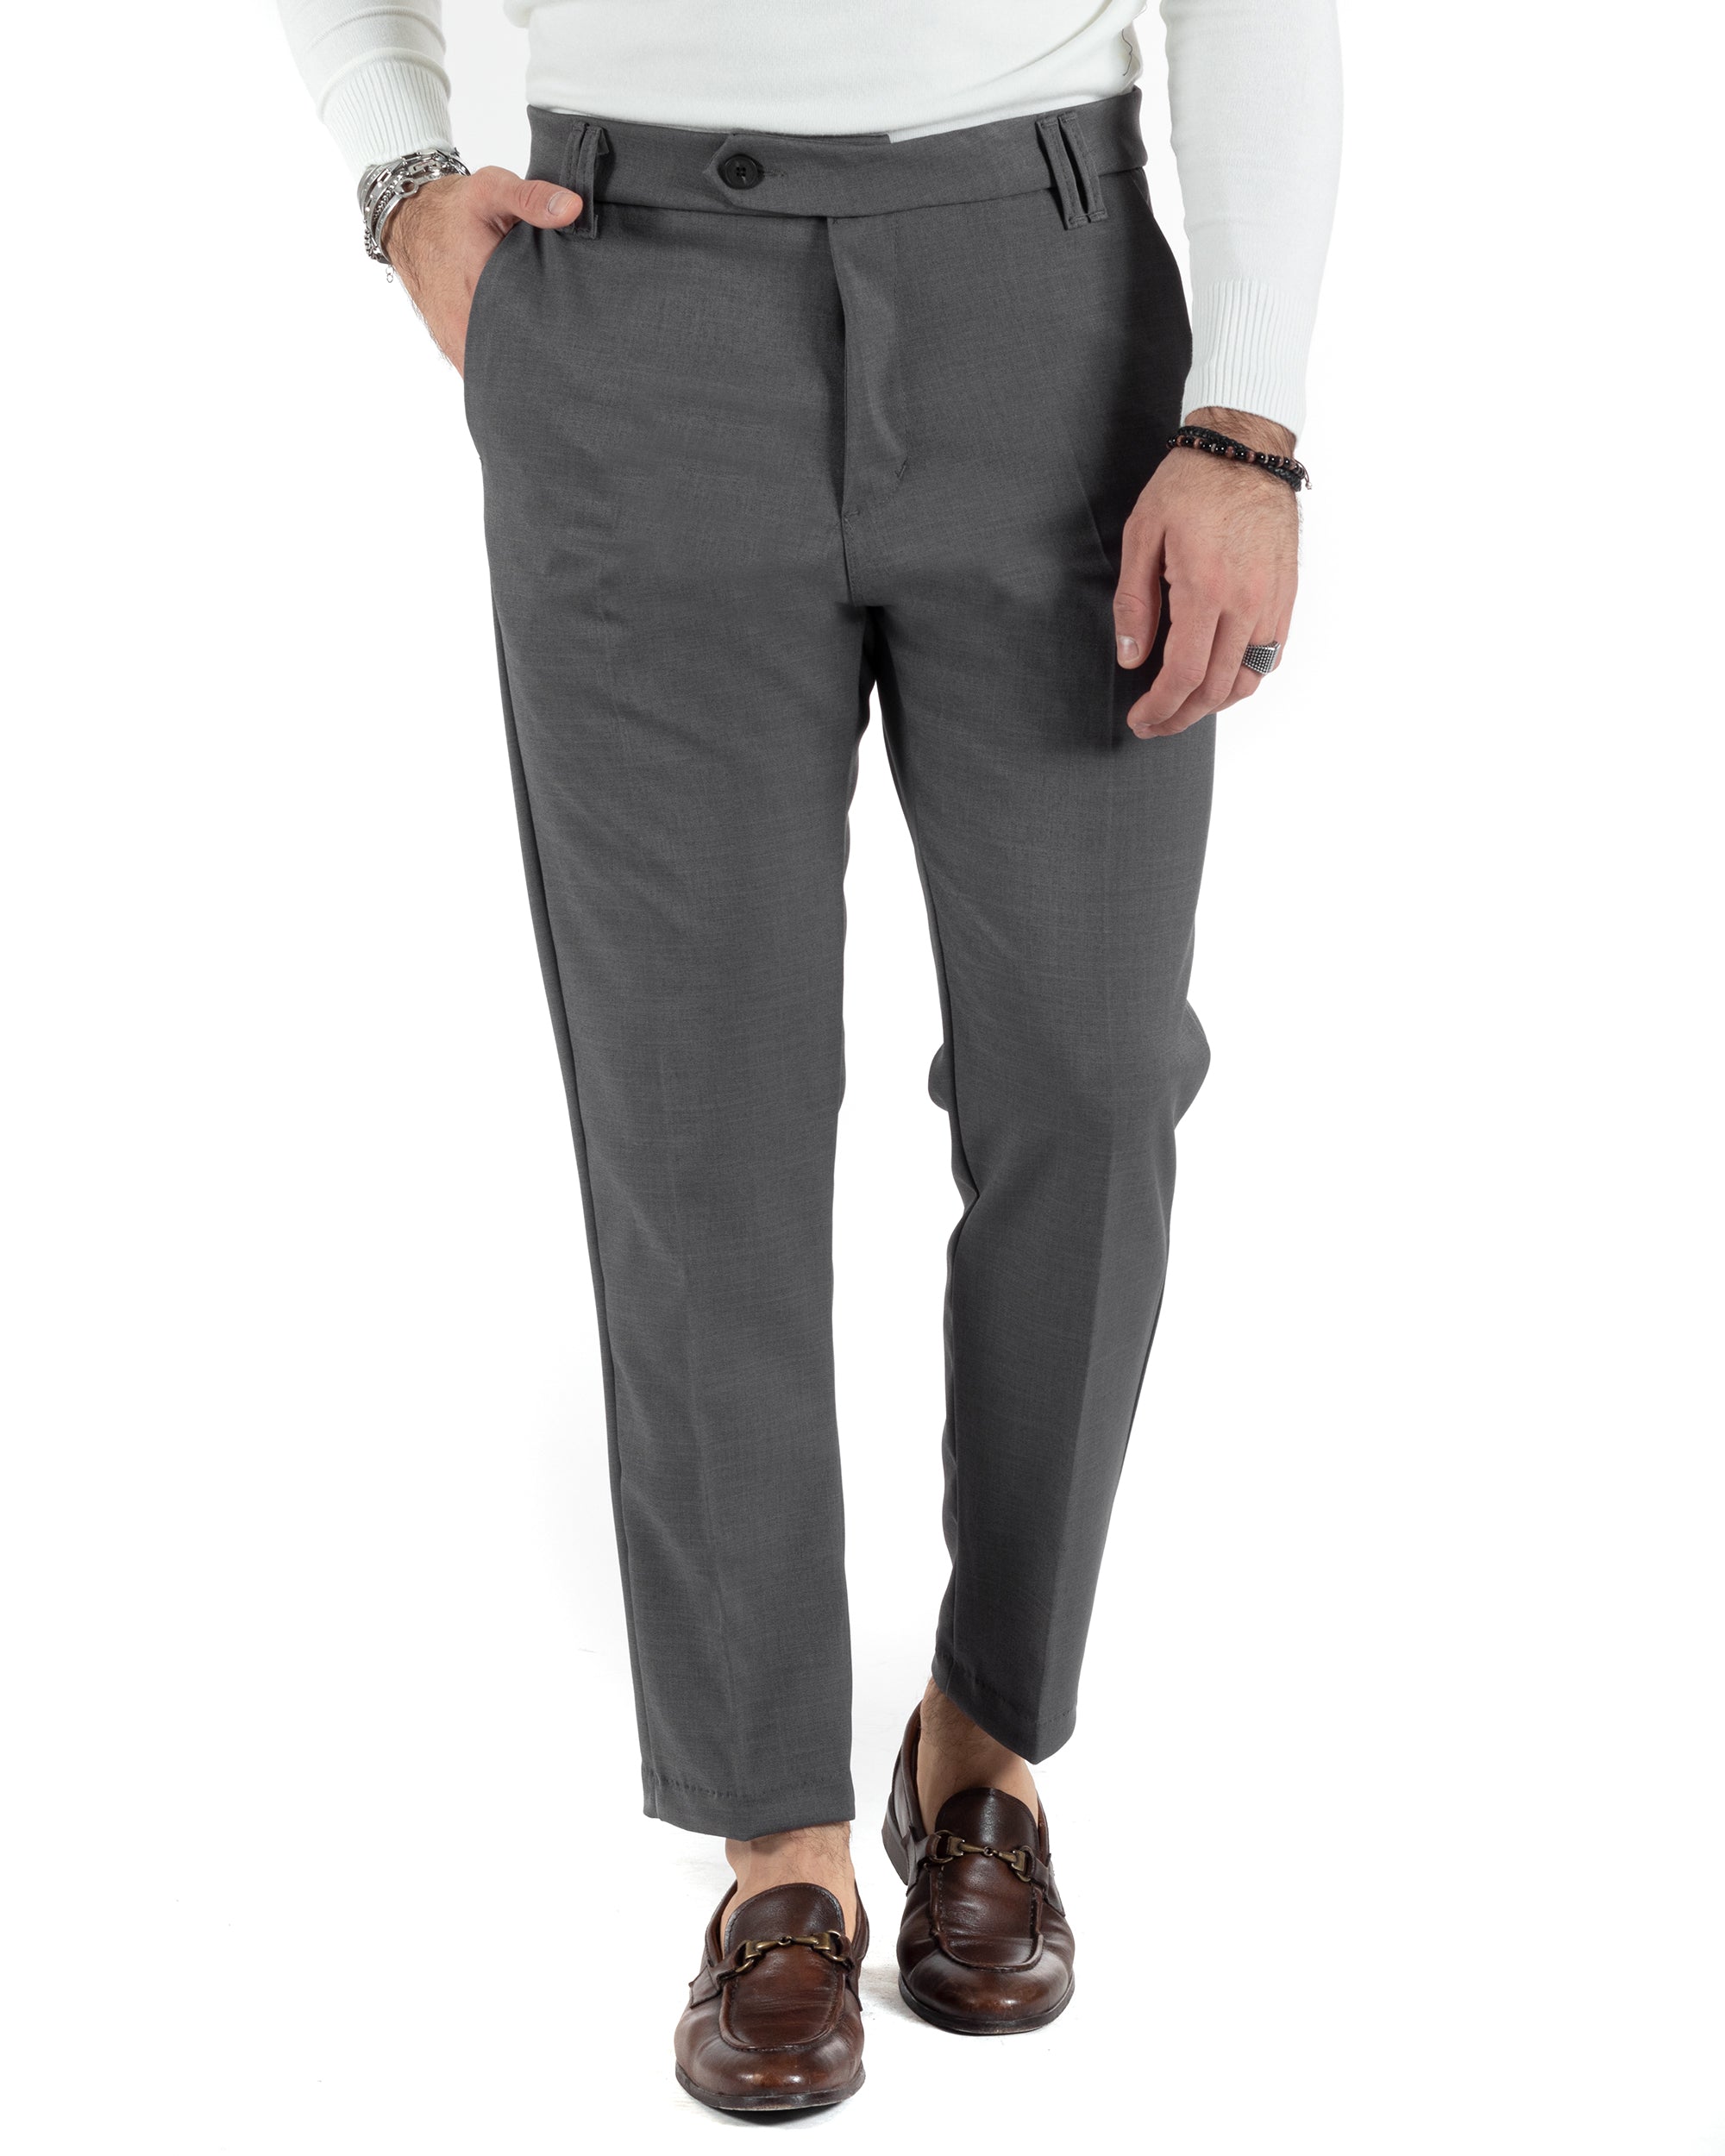 Pantaloni Uomo Viscosa Tasca America Classico Abbottonatura Allungata Casual Grigio GIOSAL-P6009A